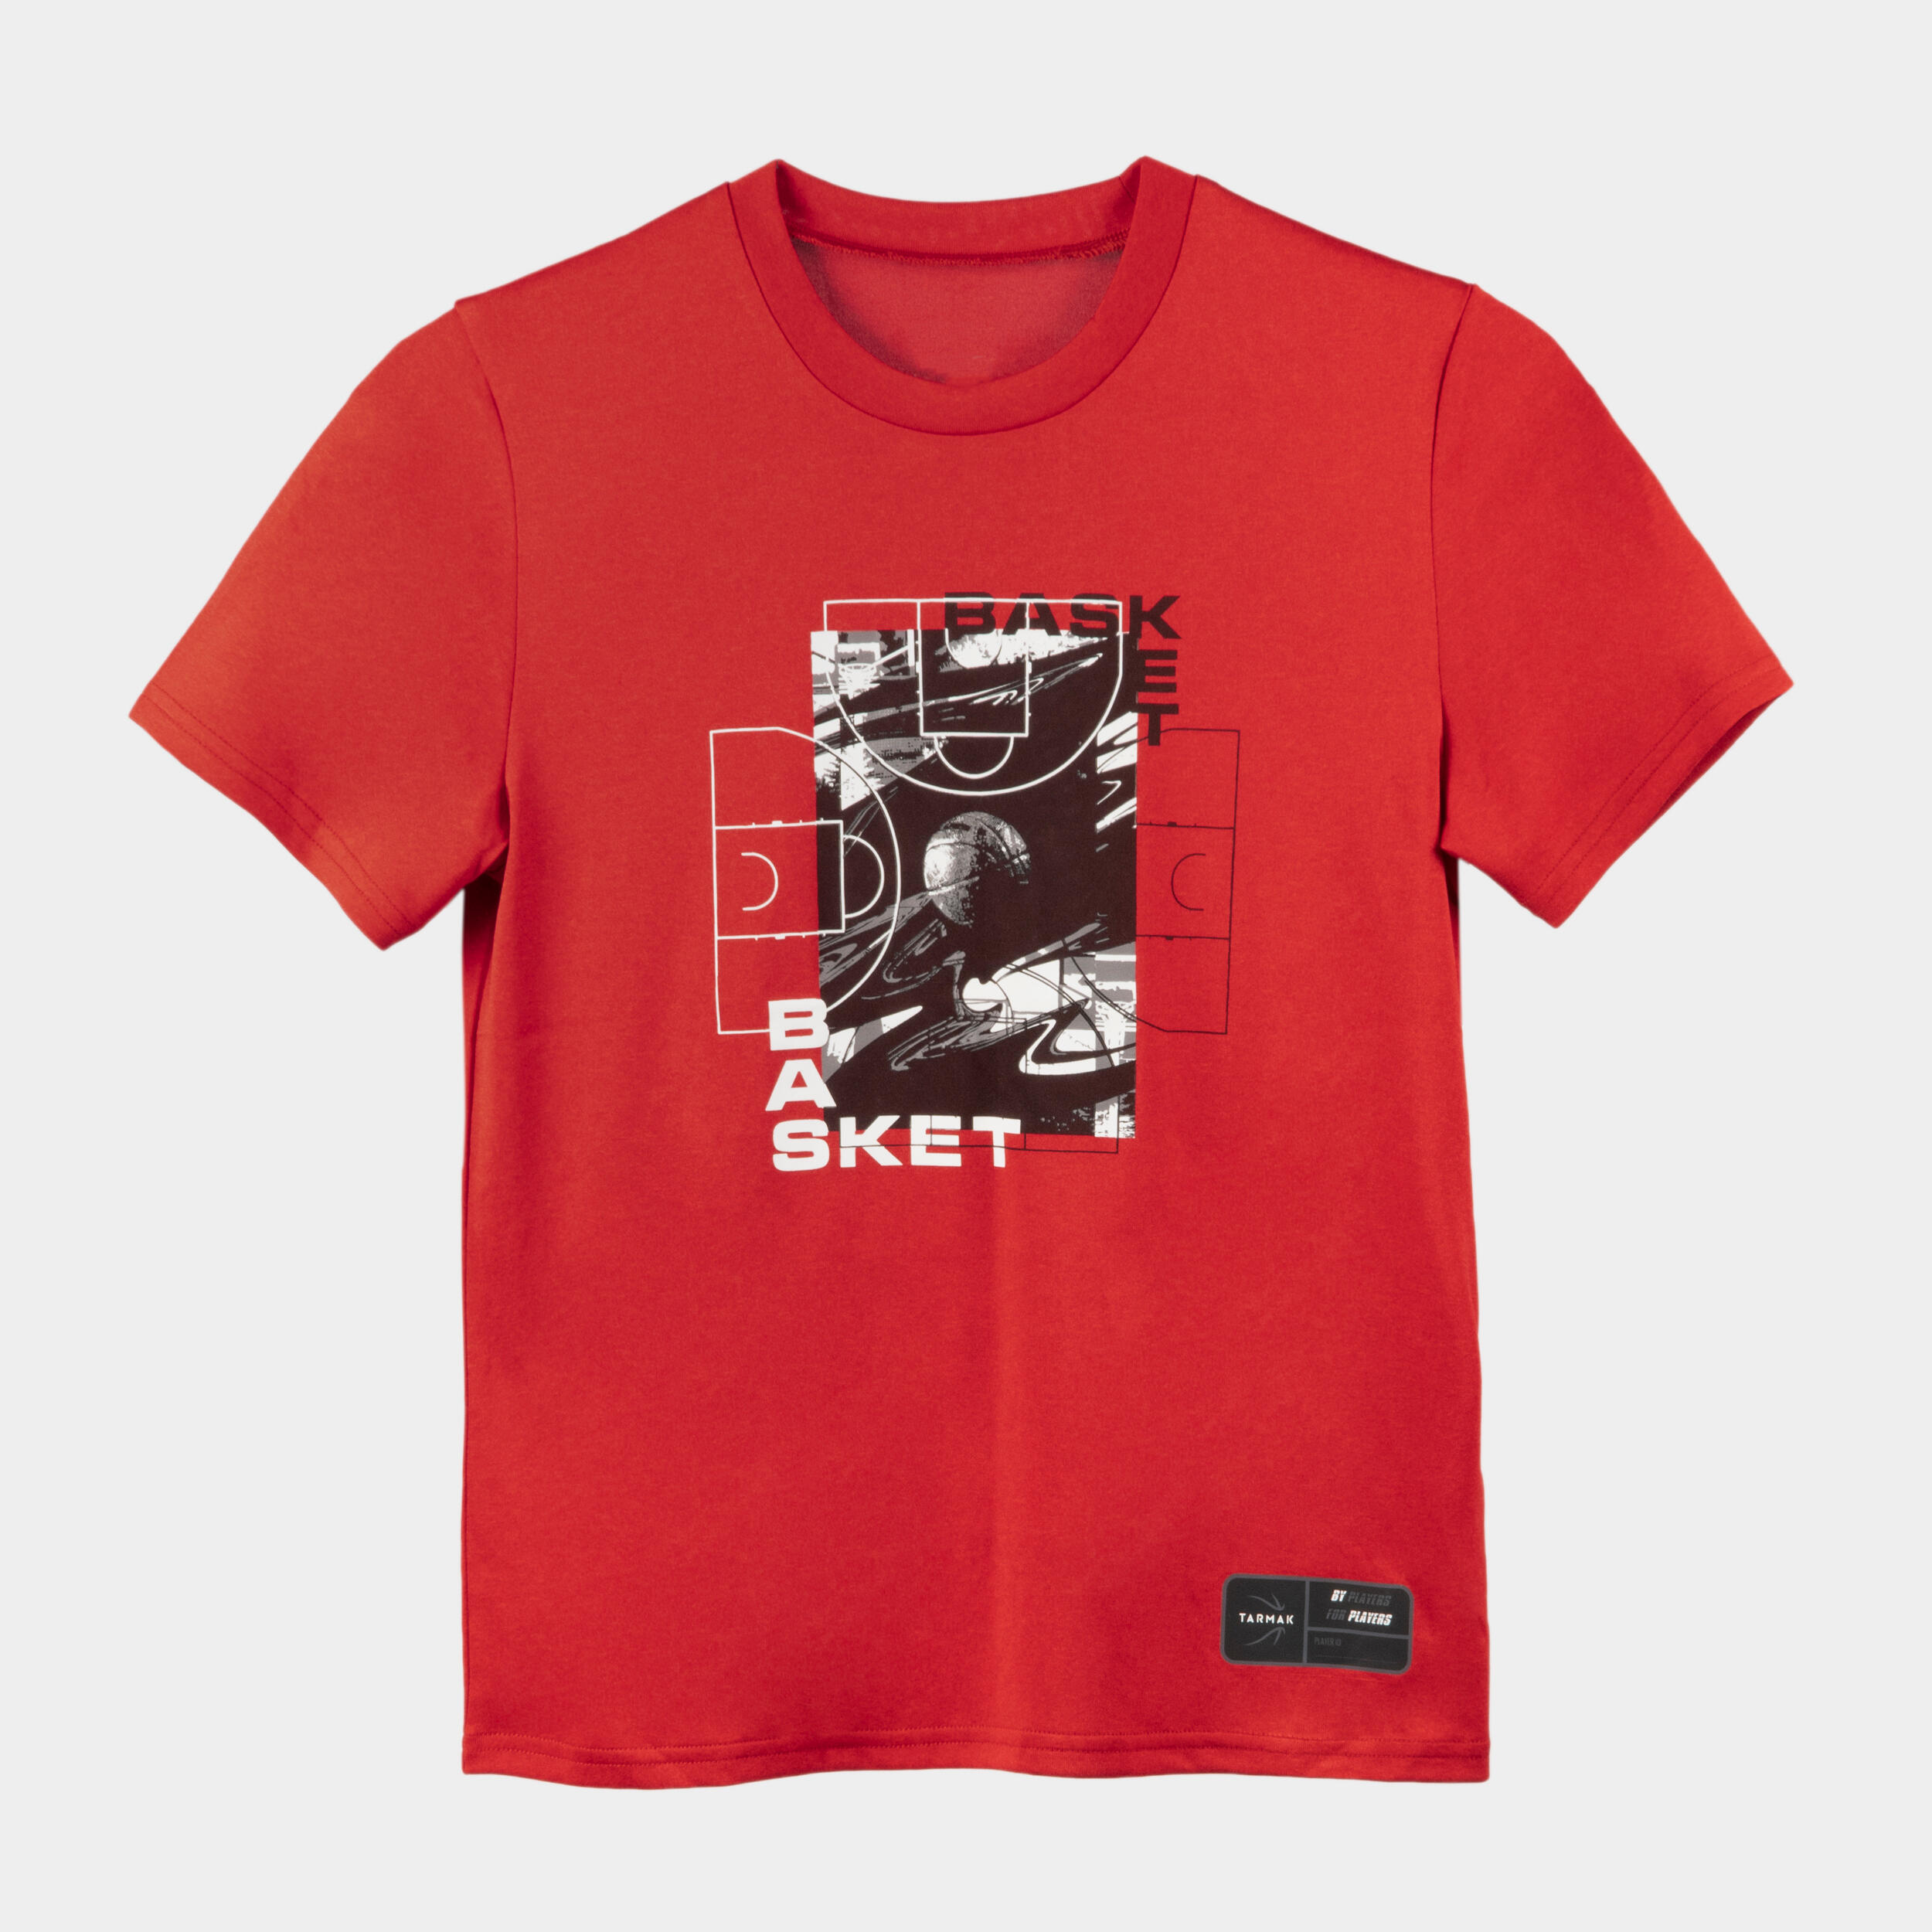 Kids' Basketball T-Shirt / Jersey TS500 Fast - Red 4/6